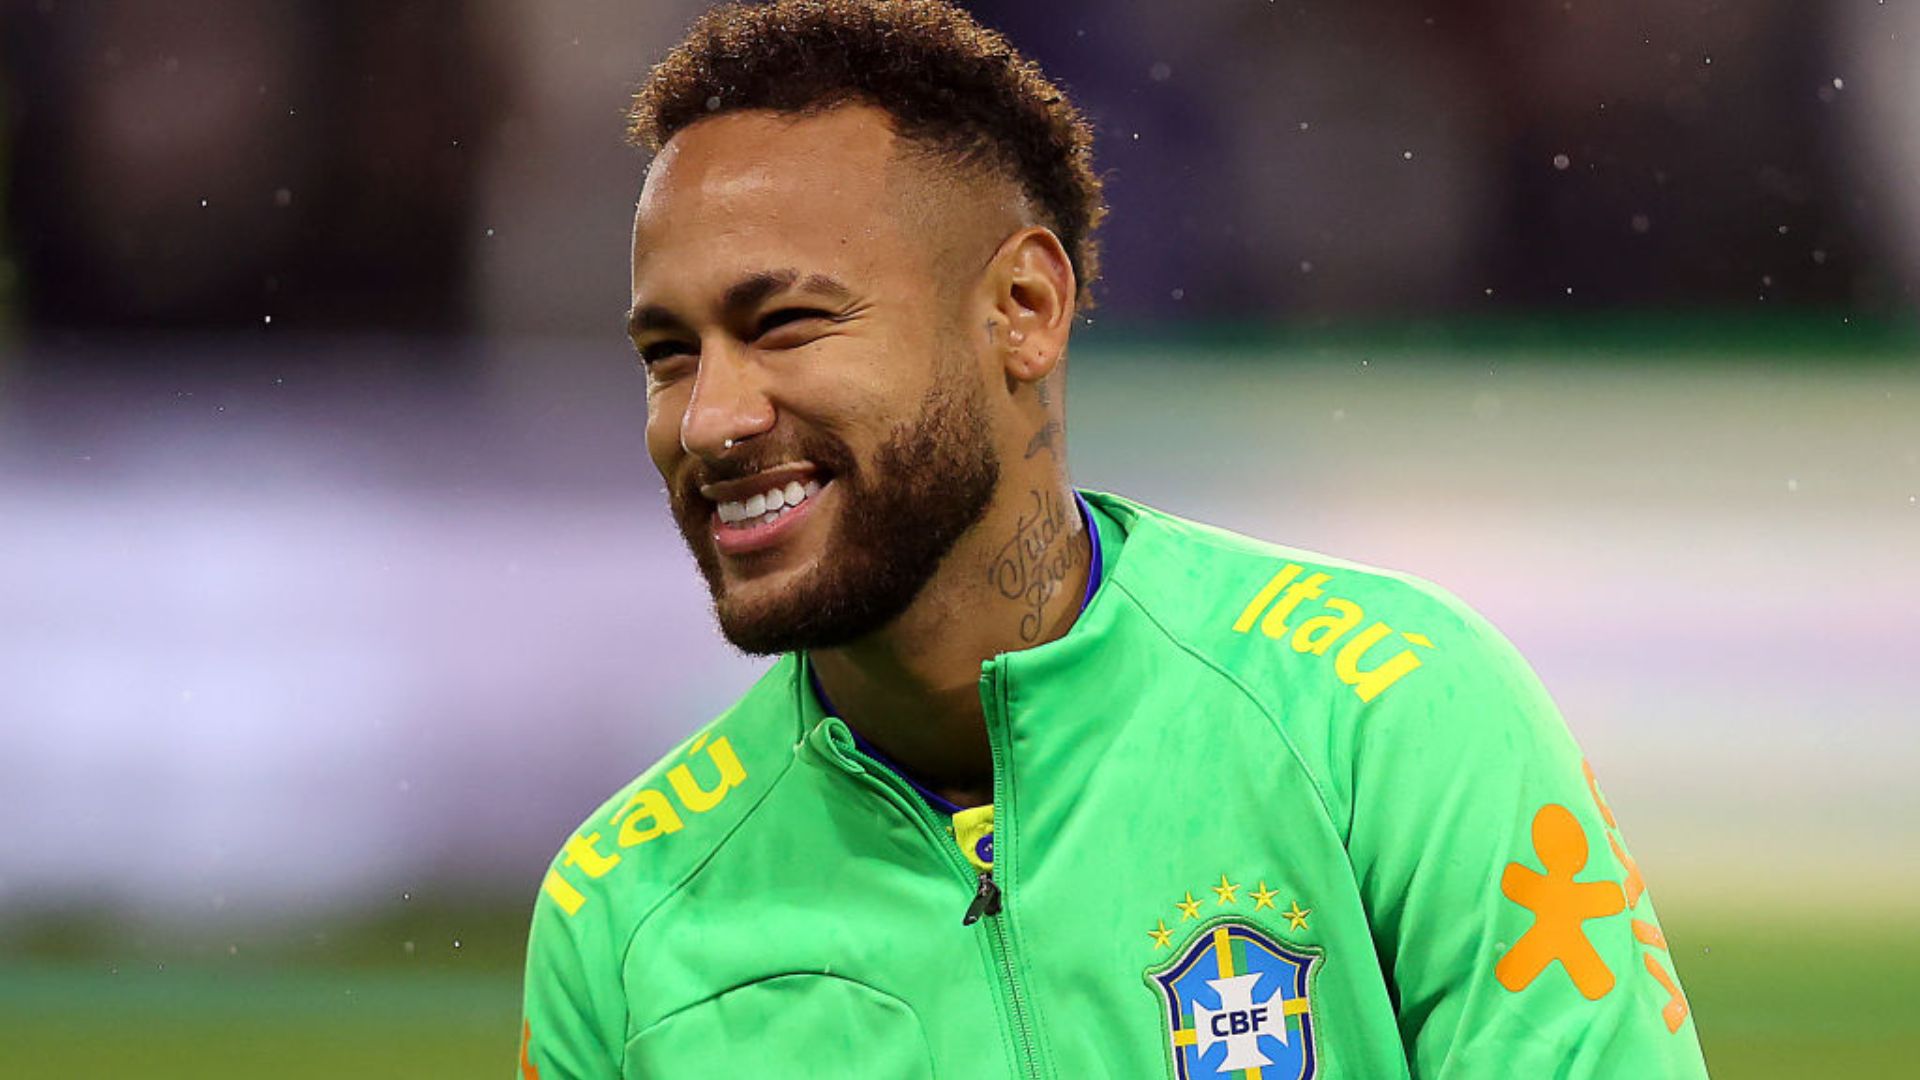 Neymar Jr. fala 'calma, calabreso' e web reage: "Acabou o meme"